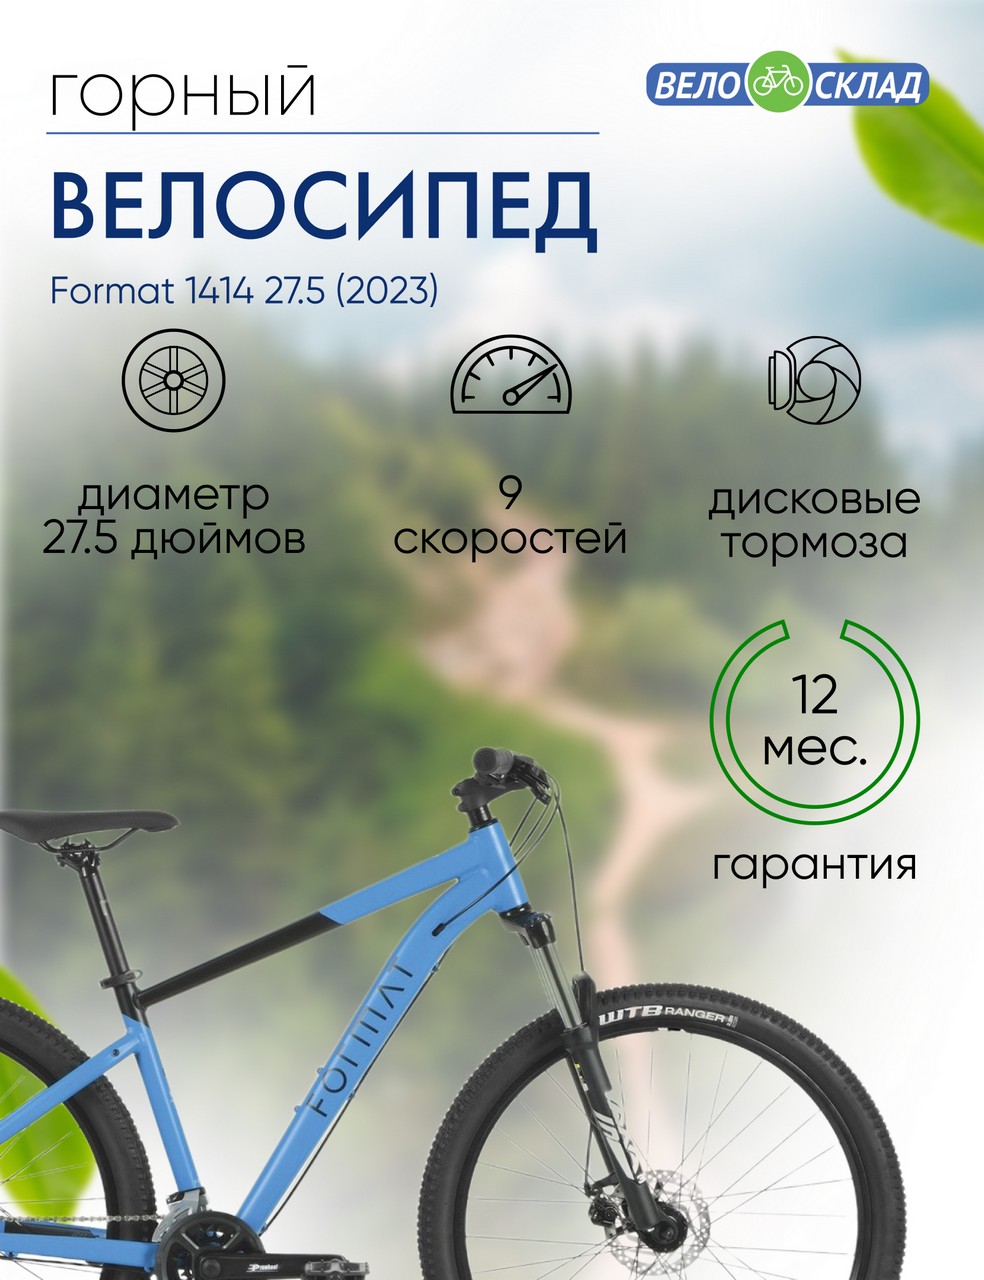 Горный велосипед Format 1414 27.5, год 2023, цвет Синий-Черный, ростовка 15